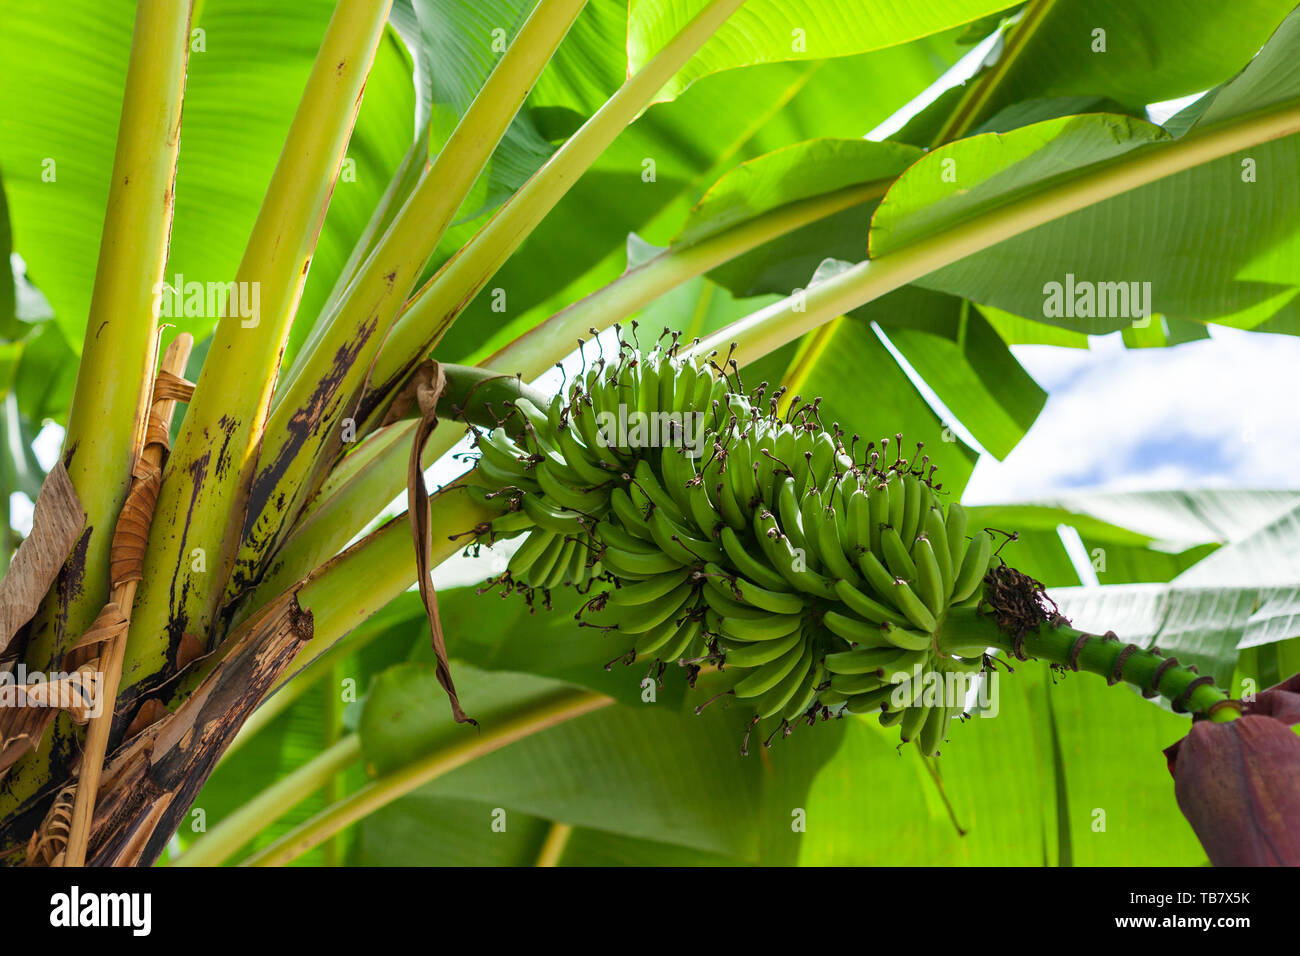 Banana (Musa acuminata) tree, Sumatra, Indonesia Stock Photo